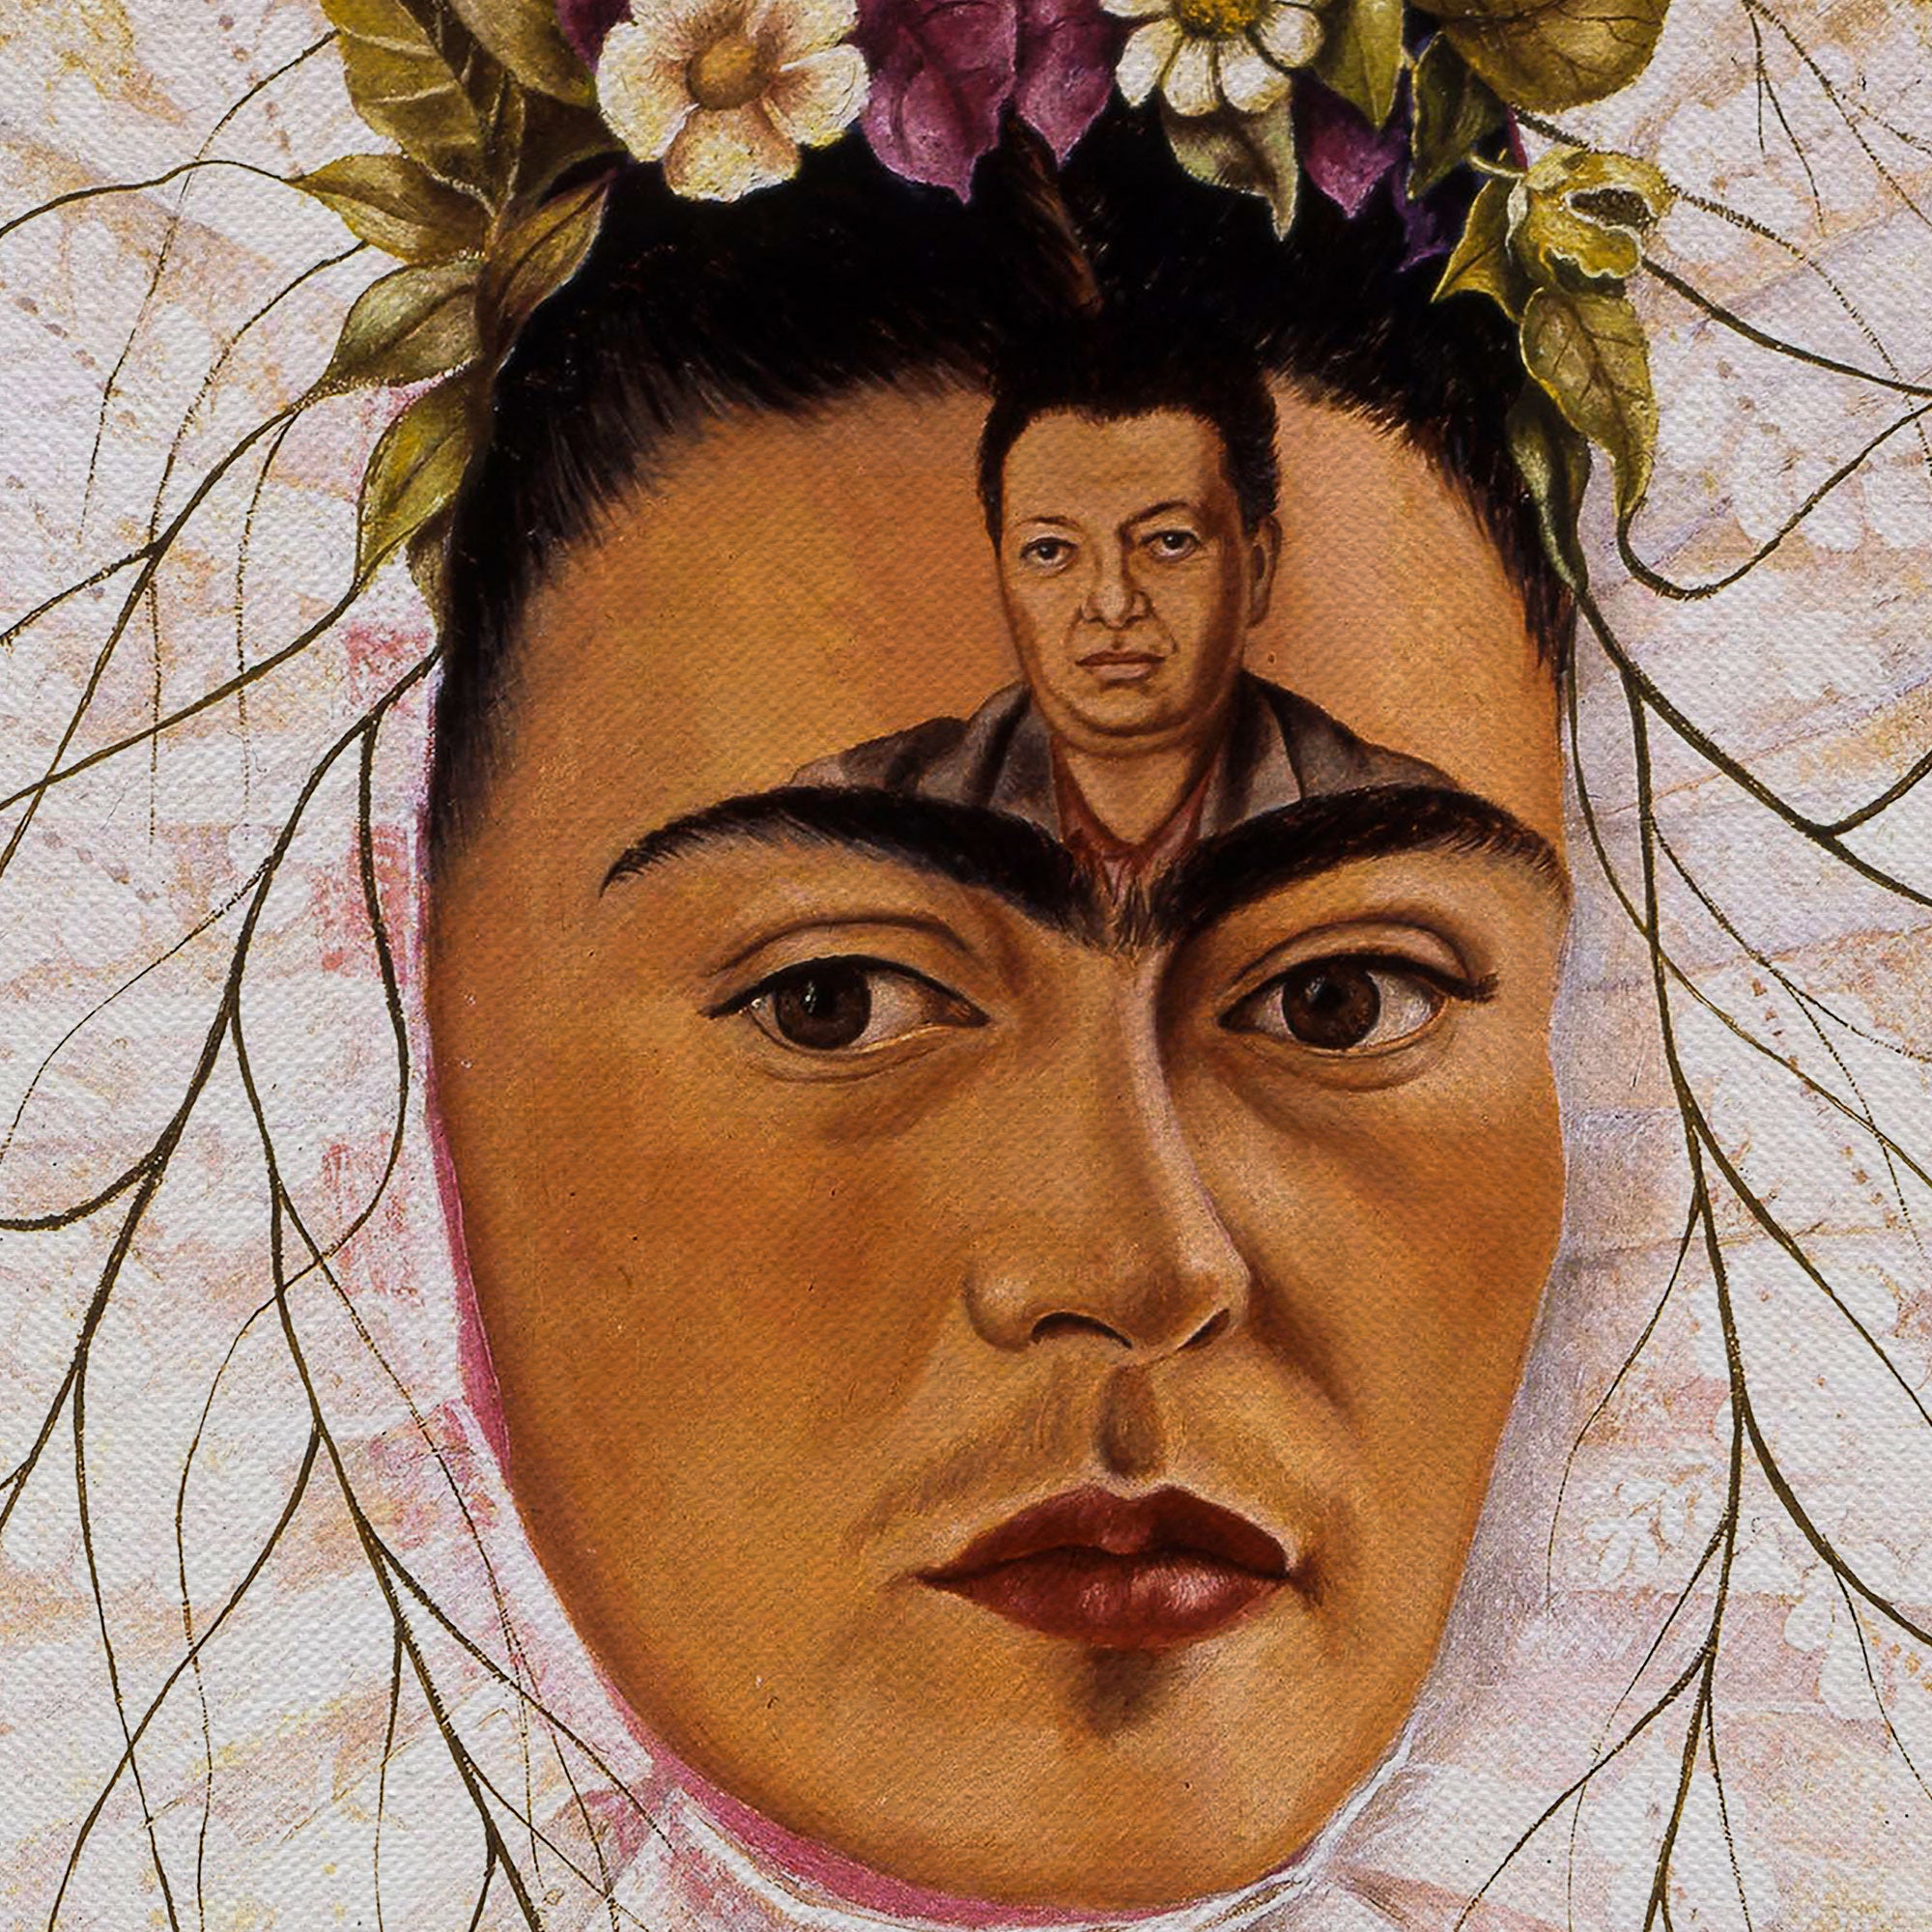 Frida Kahlo The Catholic Canvas Wall Art